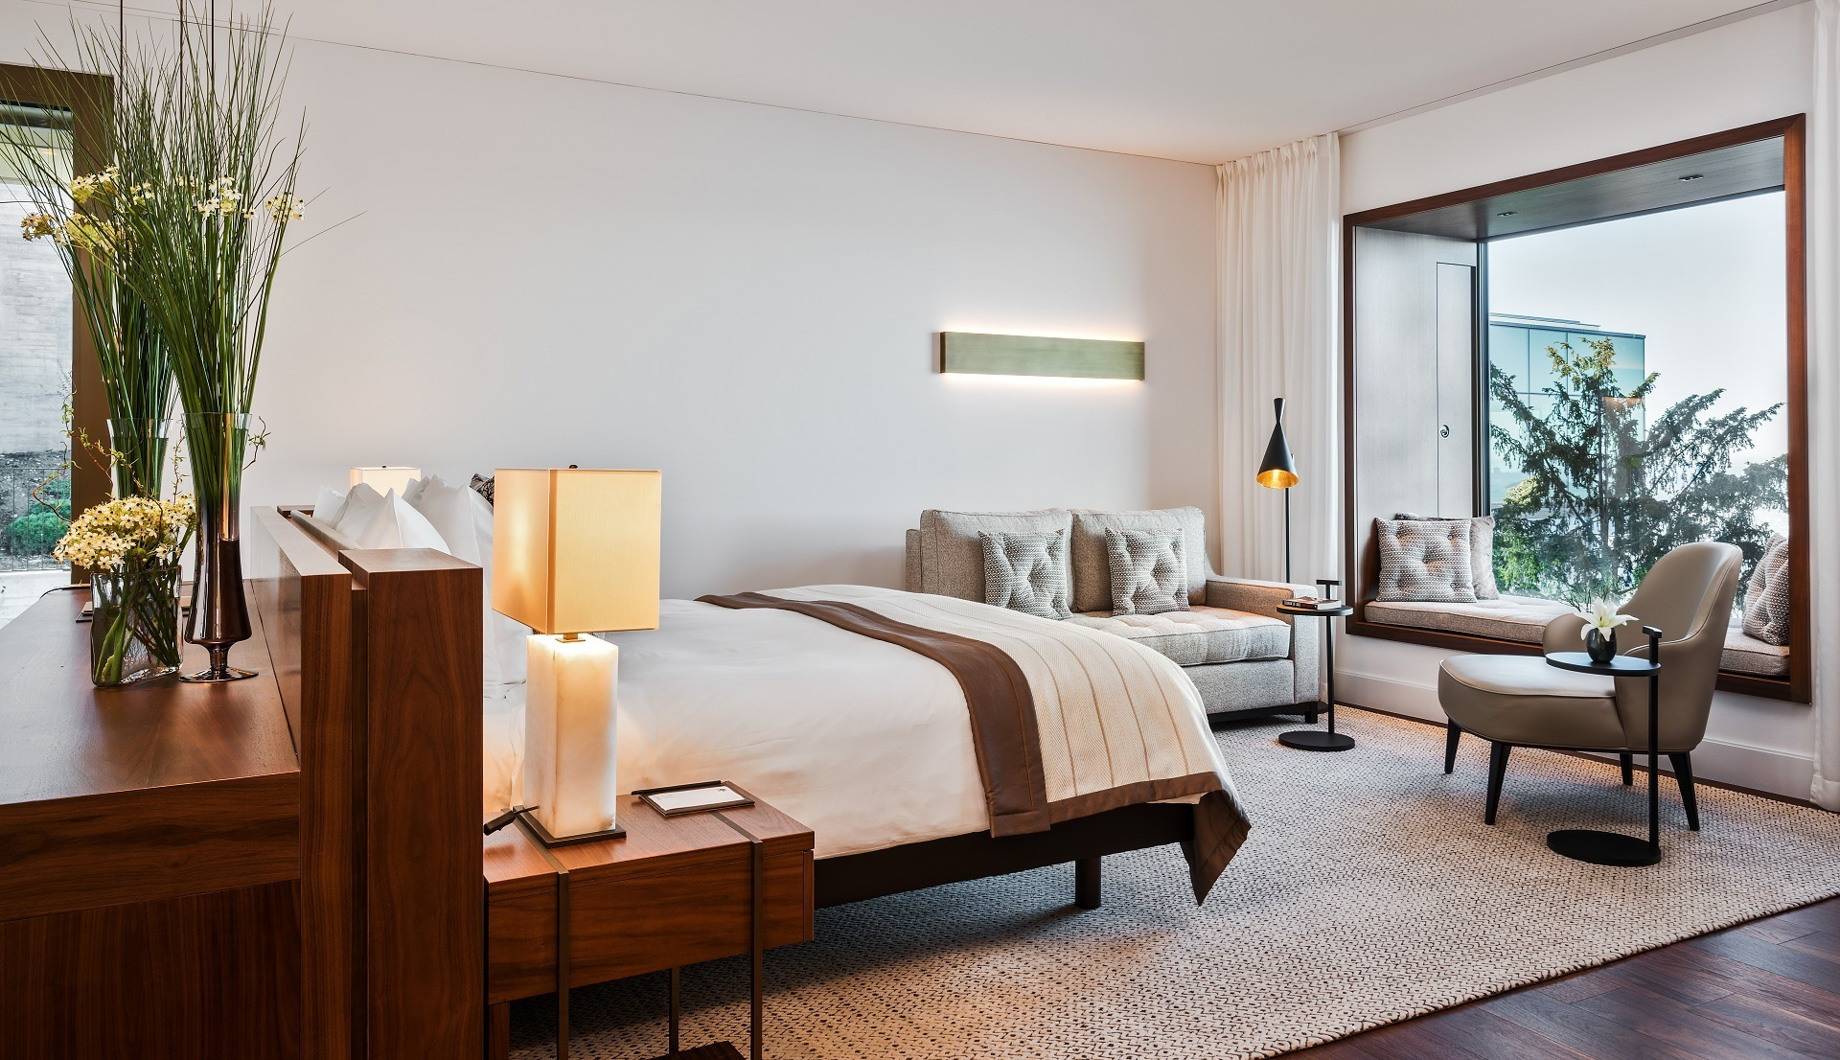 Burgenstock Hotel & Alpine Spa – Obburgen, Switzerland – Panoramic Suite Bedroom